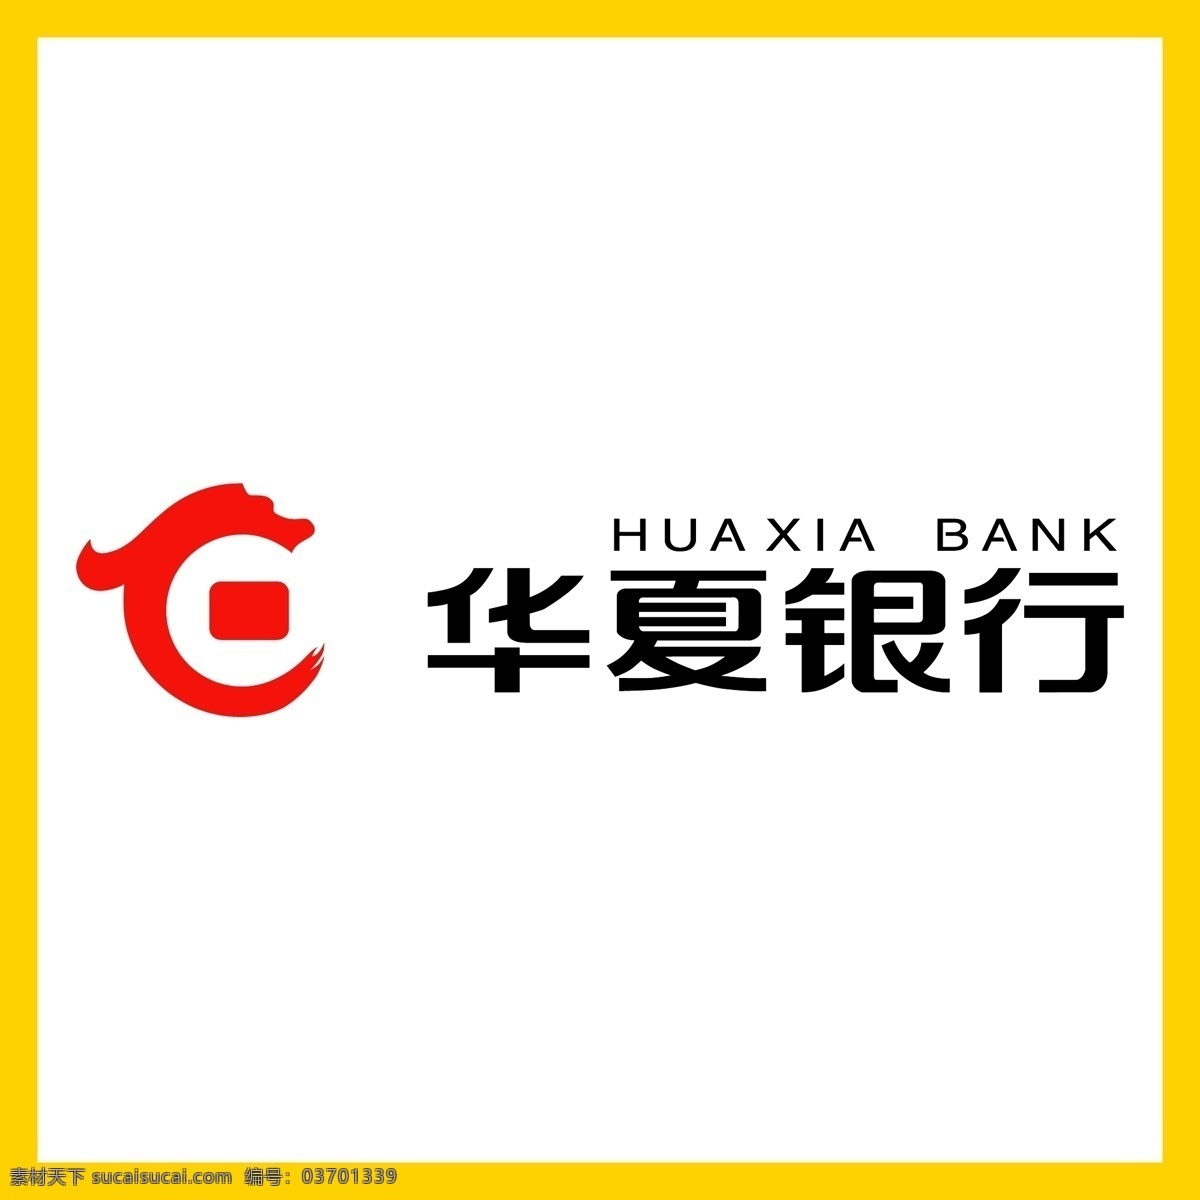 华夏银行 银行 信用卡 金融 投资理财 理财产品 贷款 国企 事业单位 logo 标志 矢量 vi logo设计